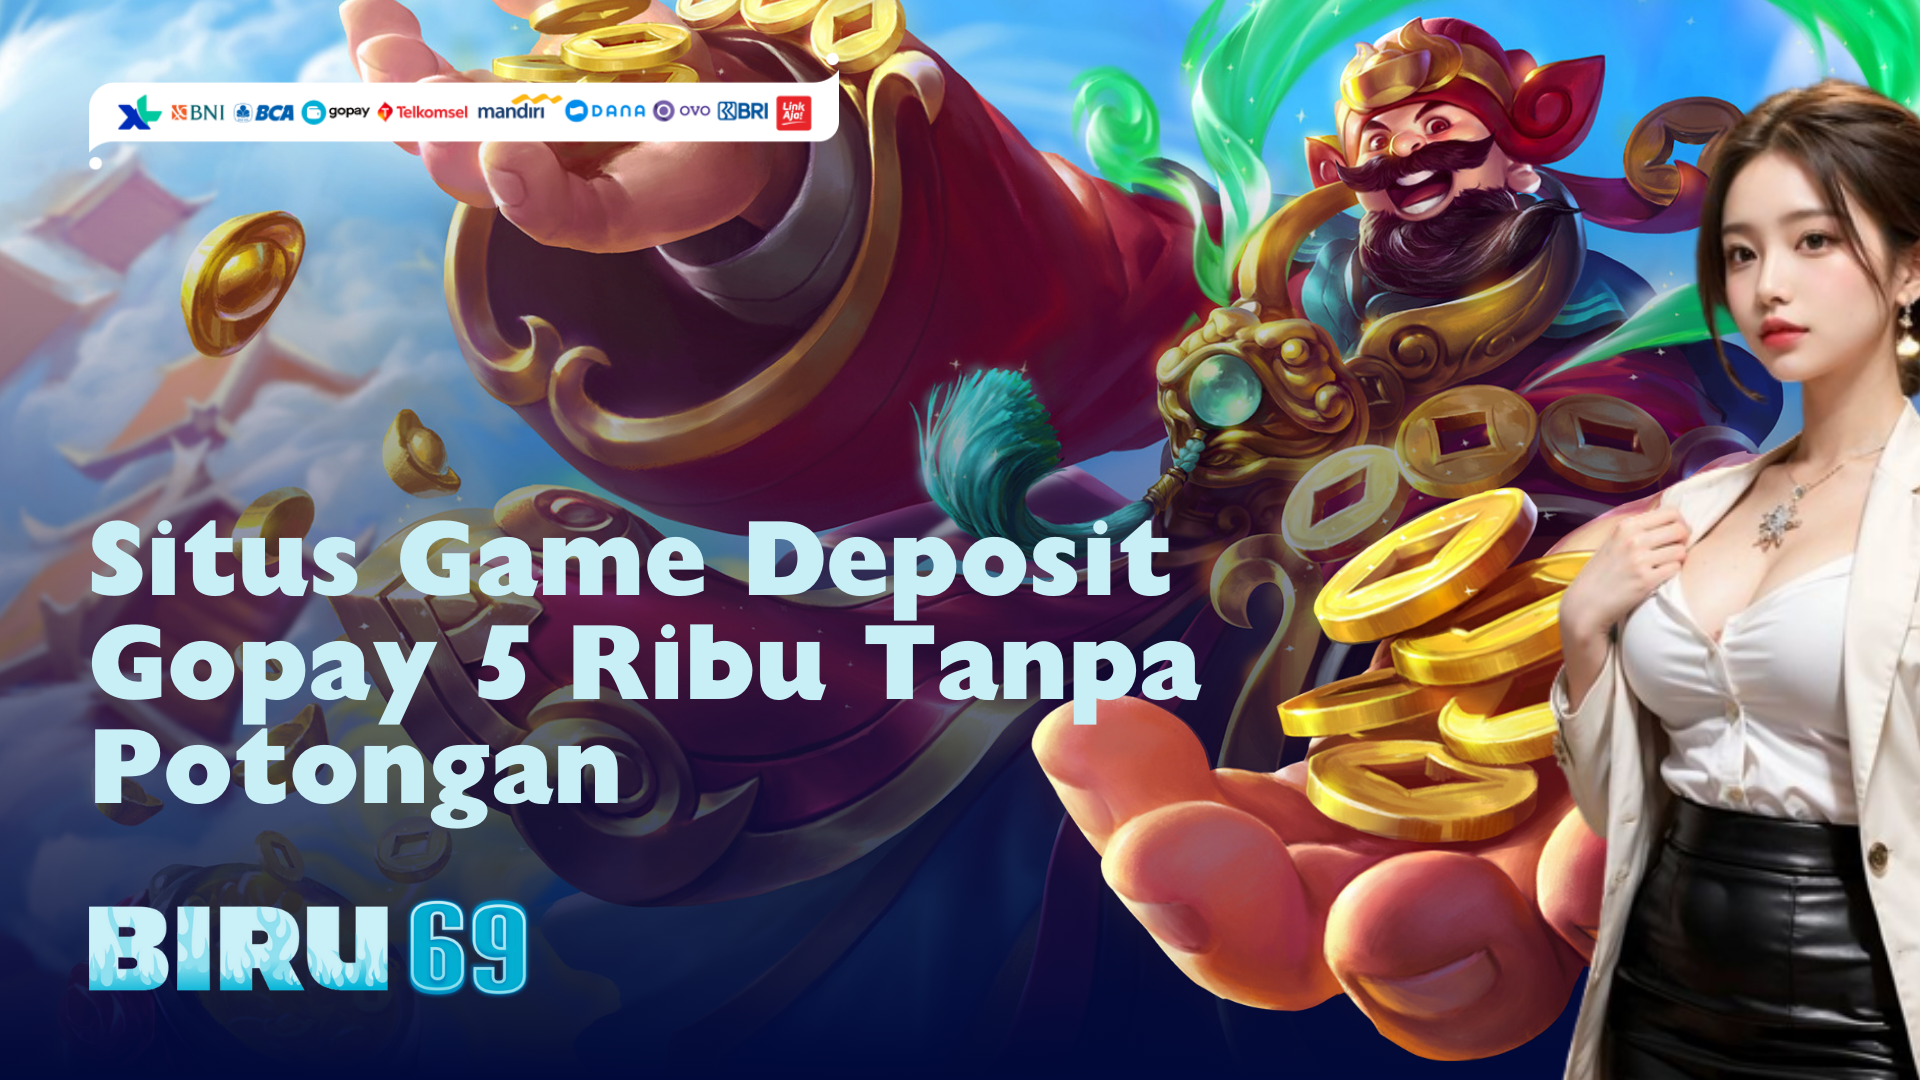 Situs Game Deposit Gopay 5 Ribu Tanpa Potongan